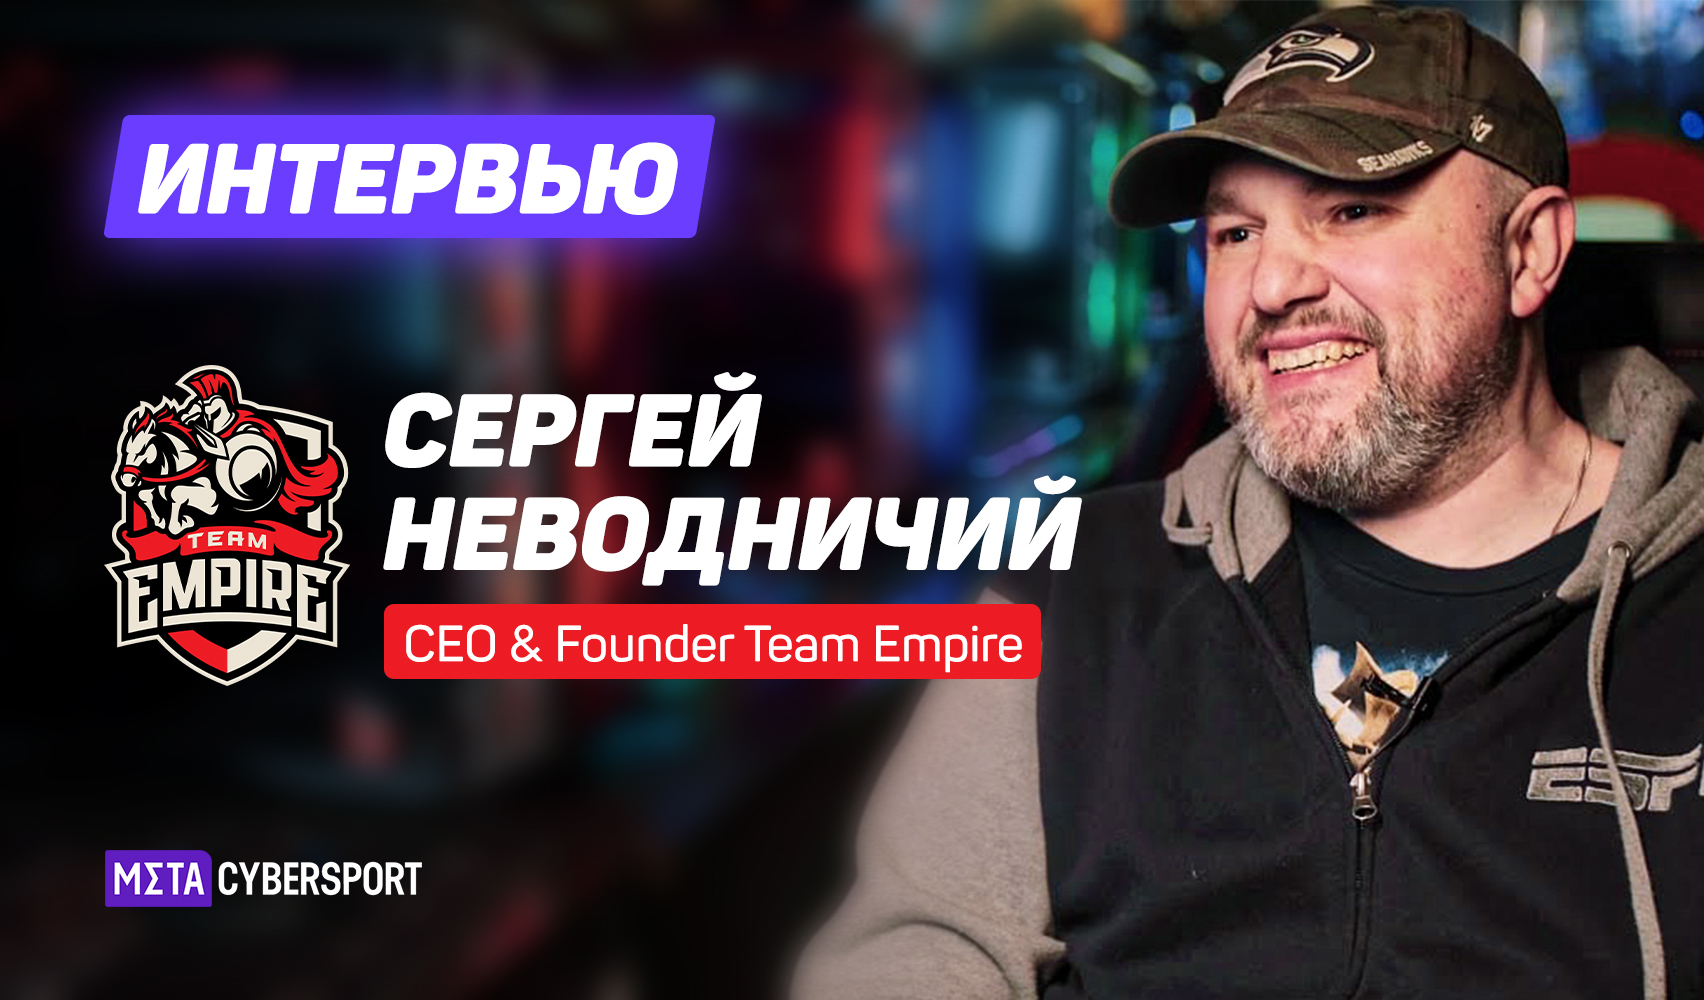 «Рынок продолжит развиваться». Интервью с CEO Team Empire о планах организации и перспективах киберспорта в РФ